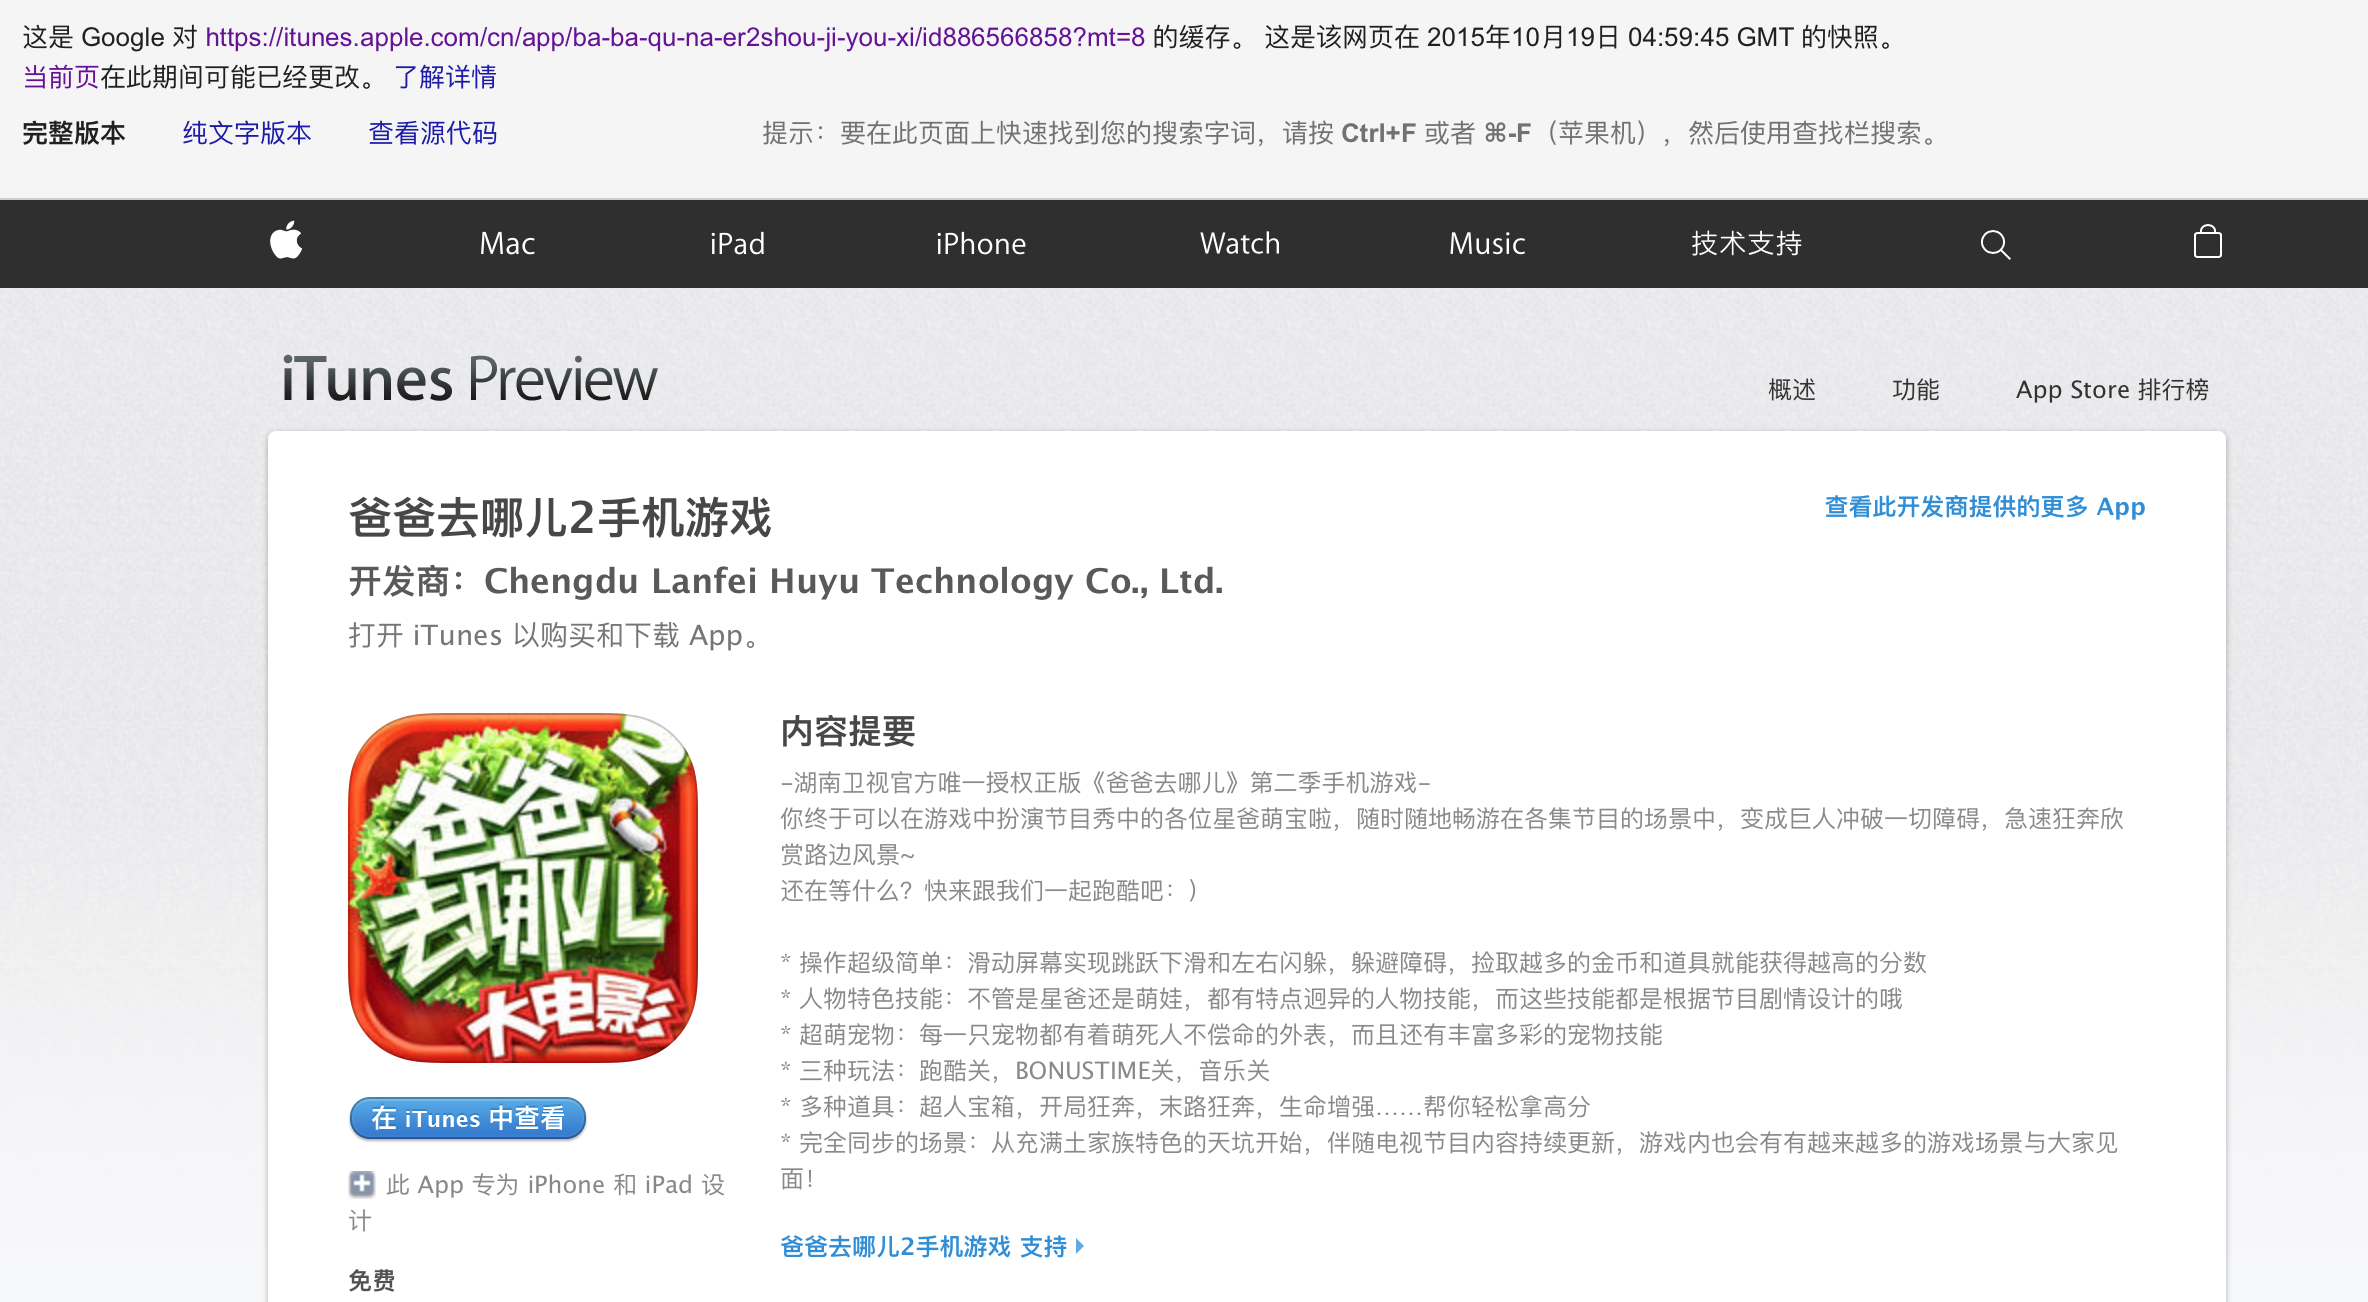 被苹果一口气下架的256款中国应用软件有什么